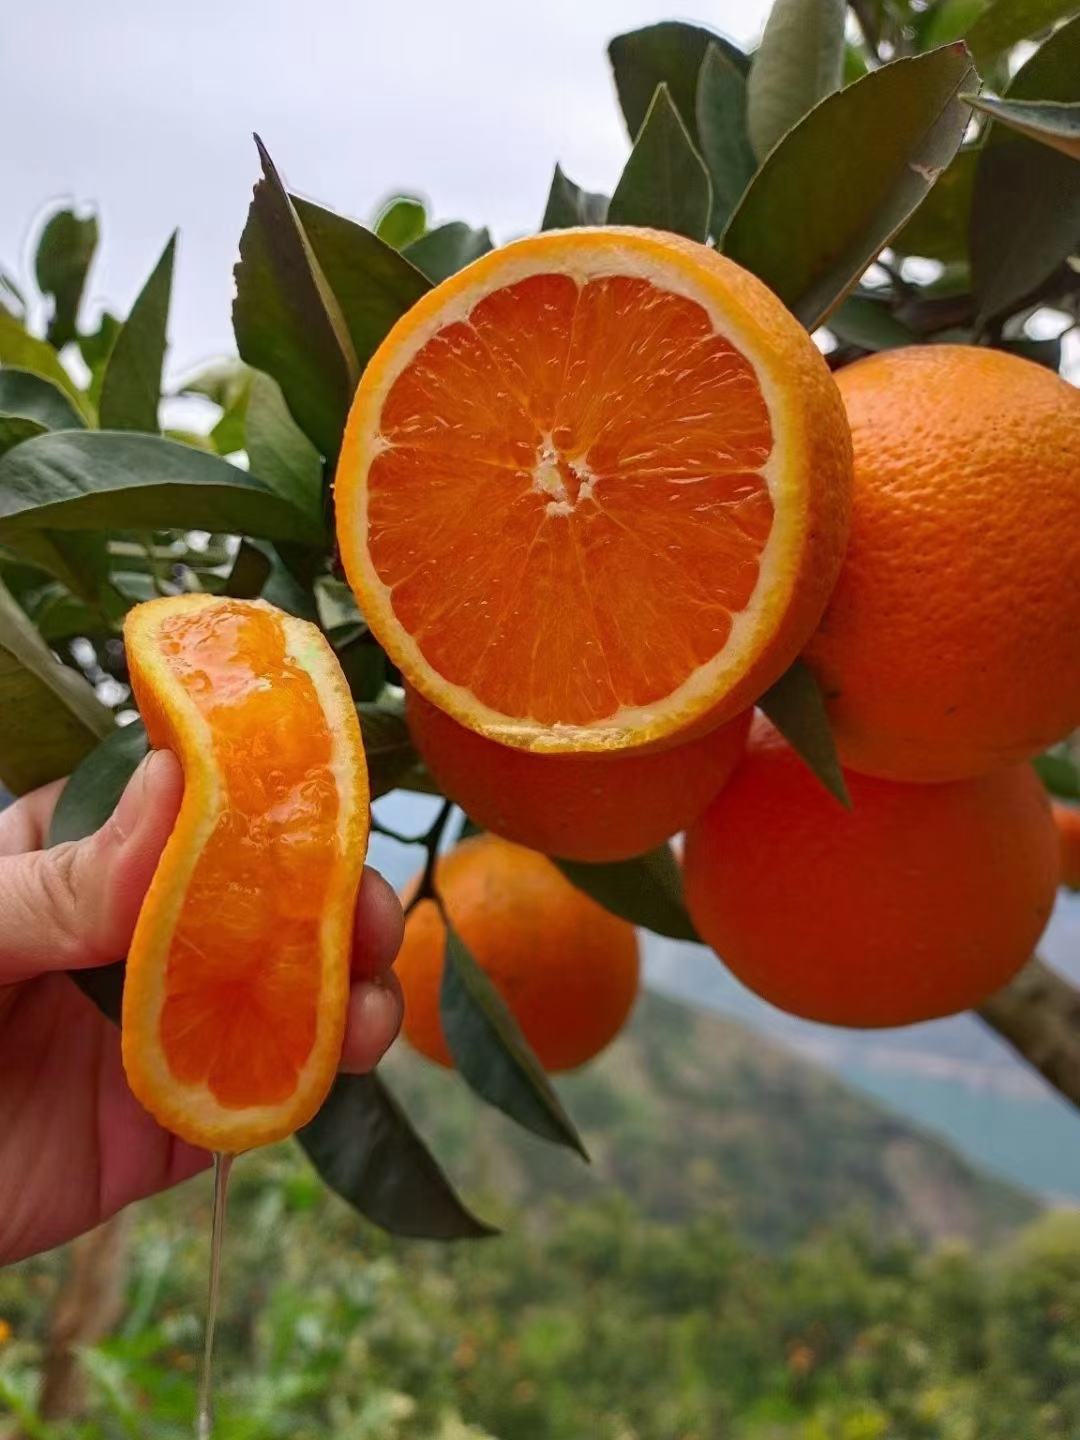 [血橙批发]血橙价格2.00元/斤 - 一亩田